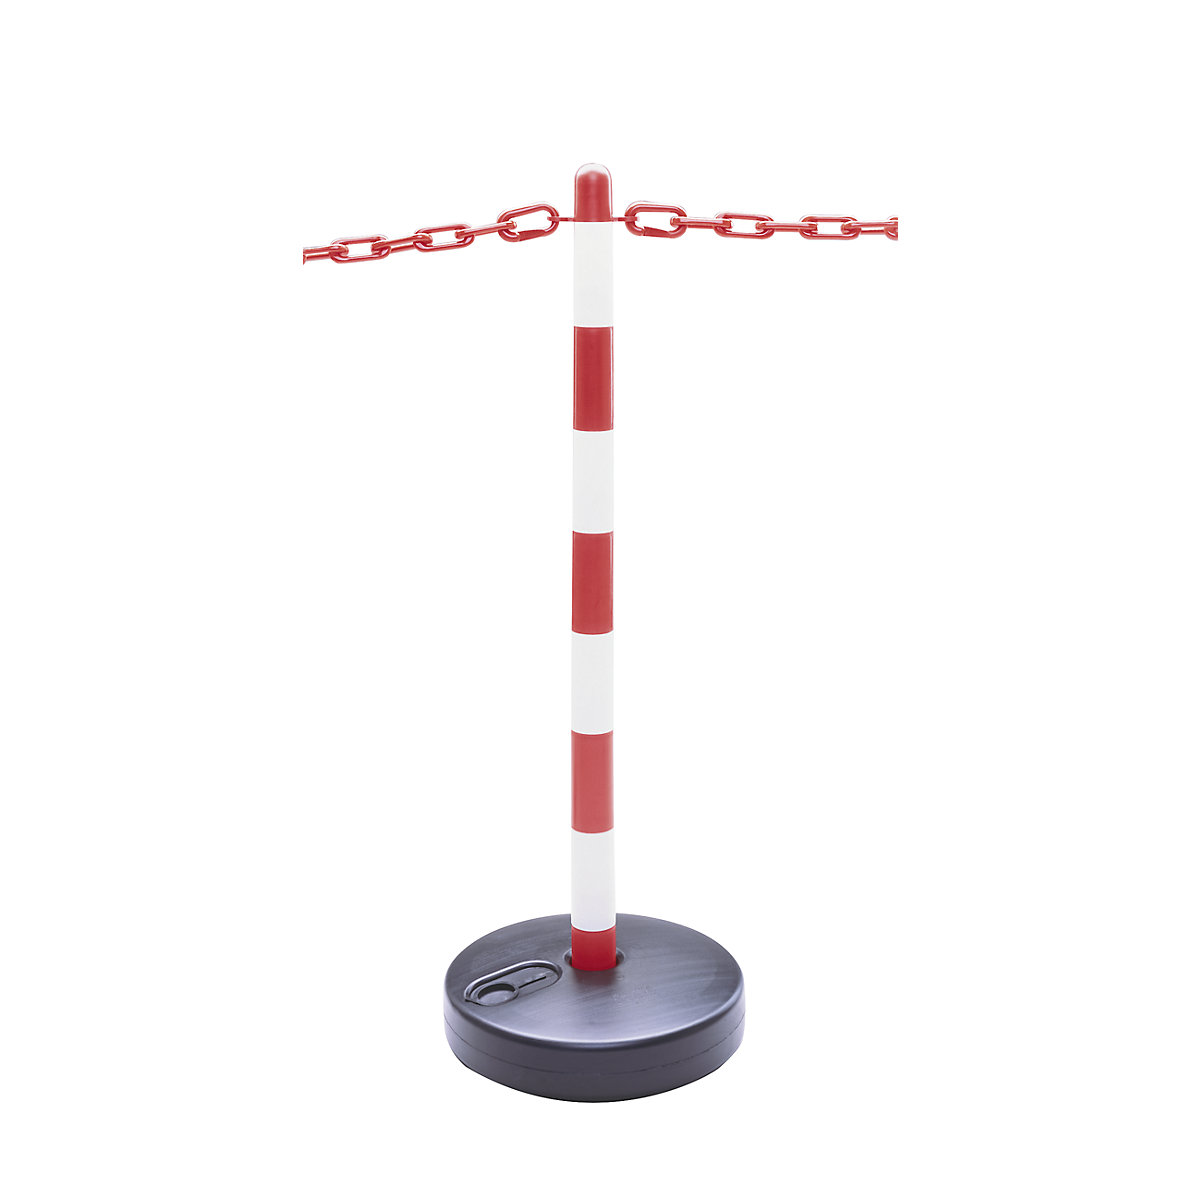 Kettingstandaardset, ronde kunststofvoet, vulbaar, 6 palen, ketting 10 m, rood / wit